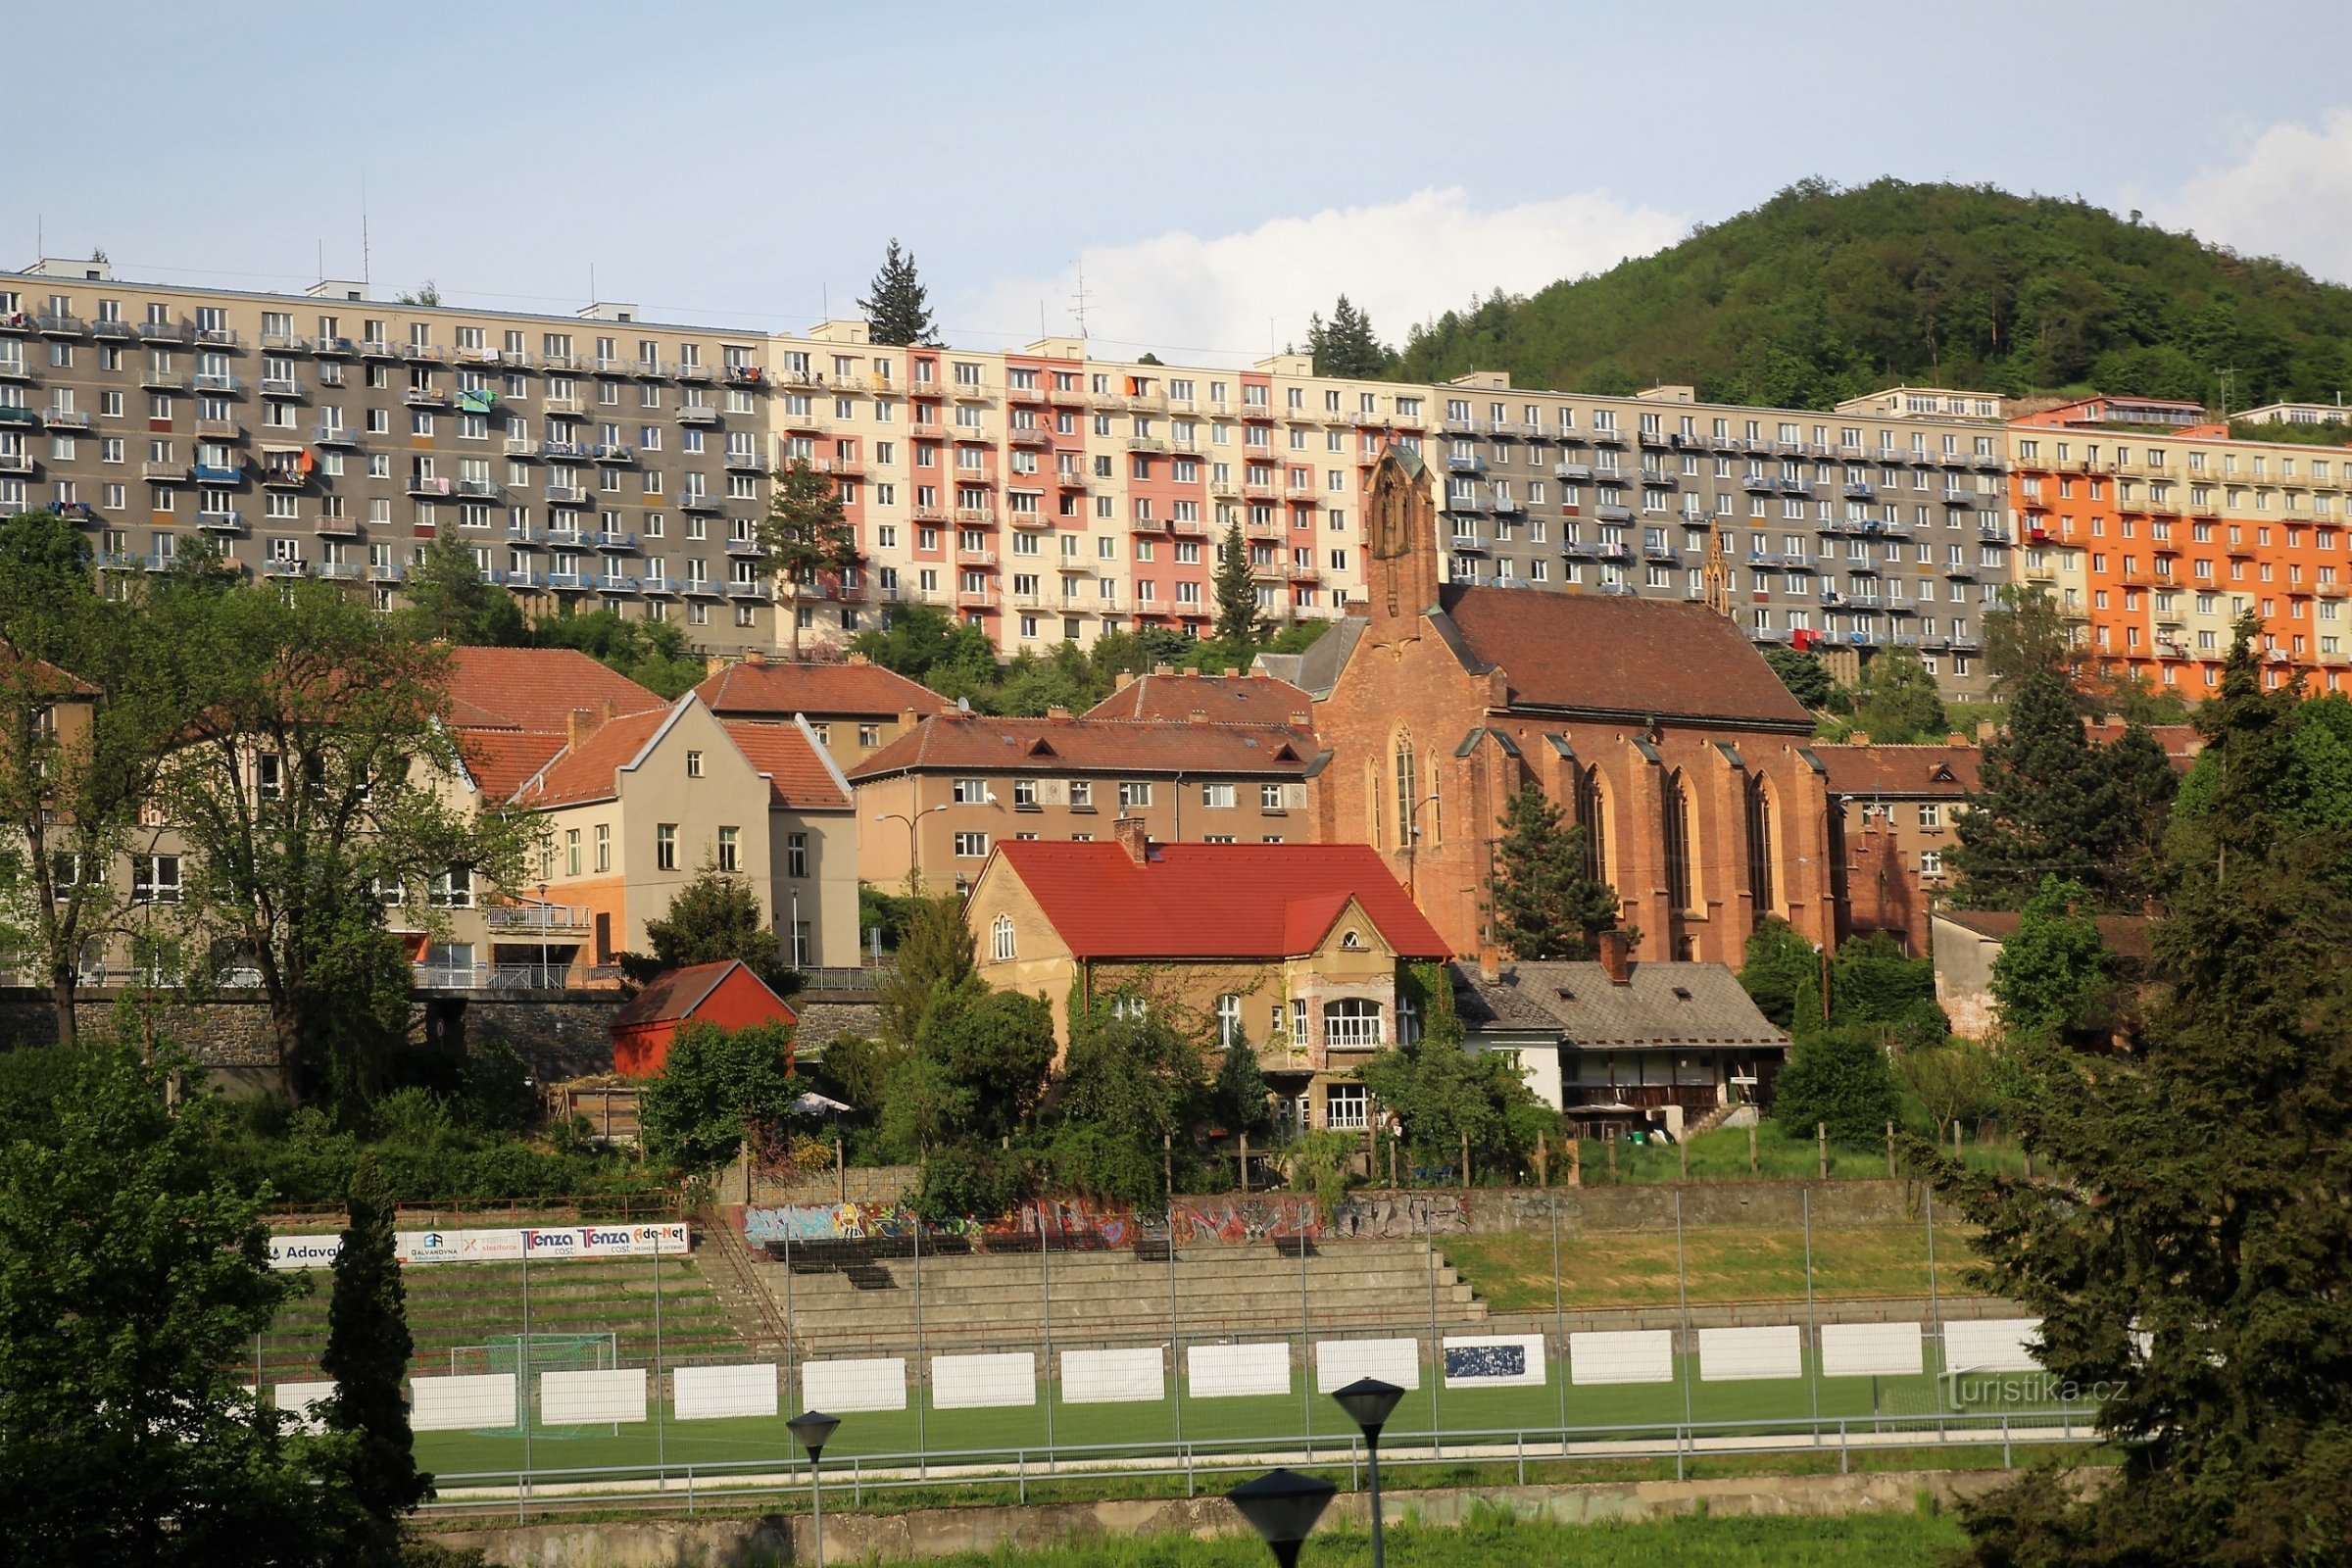 Панорама панельного дома Градчаны на улице Коменского, перед ним церковь св. Барбара